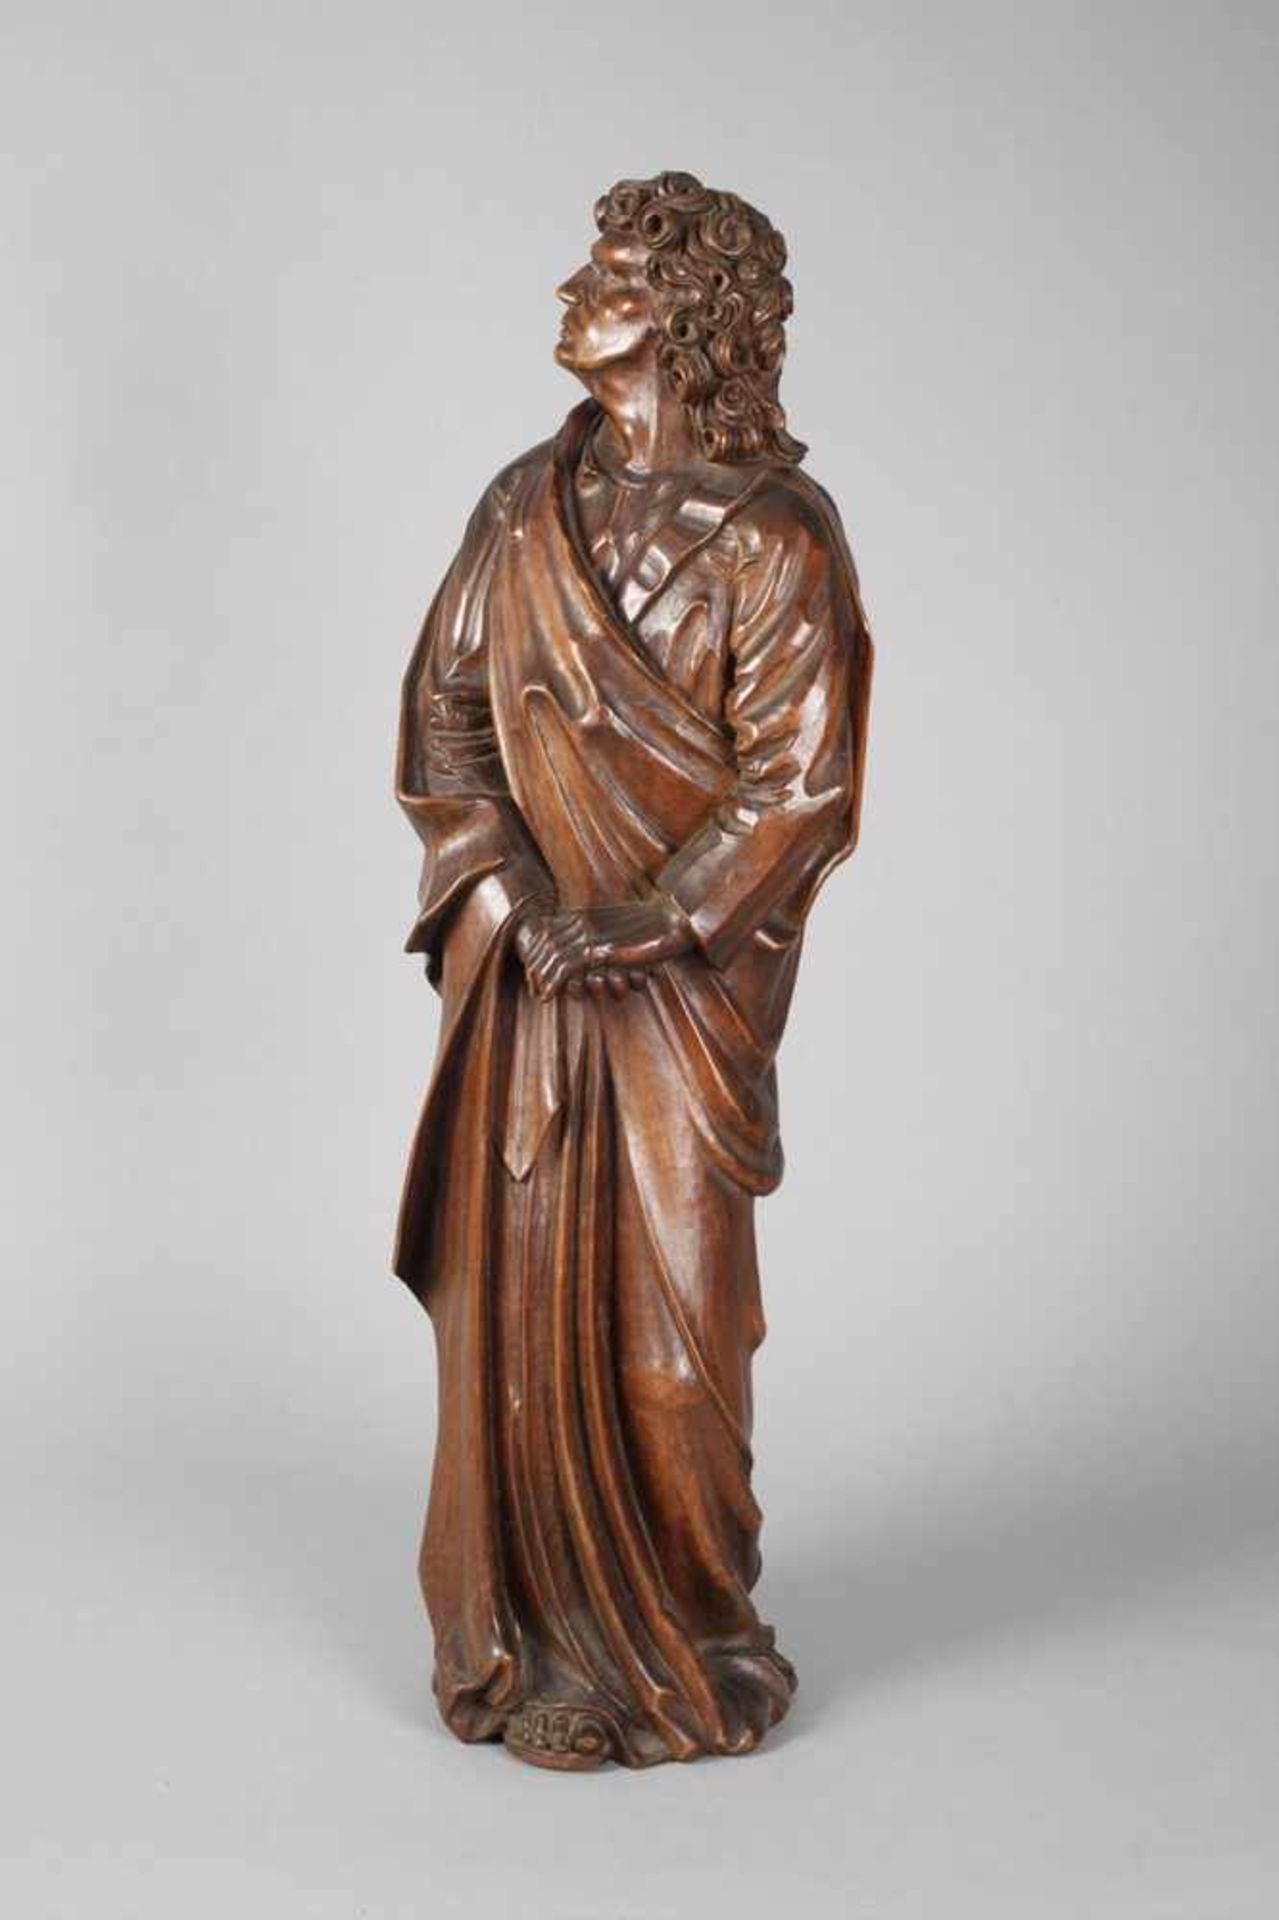 Geschnitzte Heiligenfigurum 1900, ungemarkt, Nussbaum beschnitzt, dunkelbraun gebeizt, vollplastisch - Bild 2 aus 4